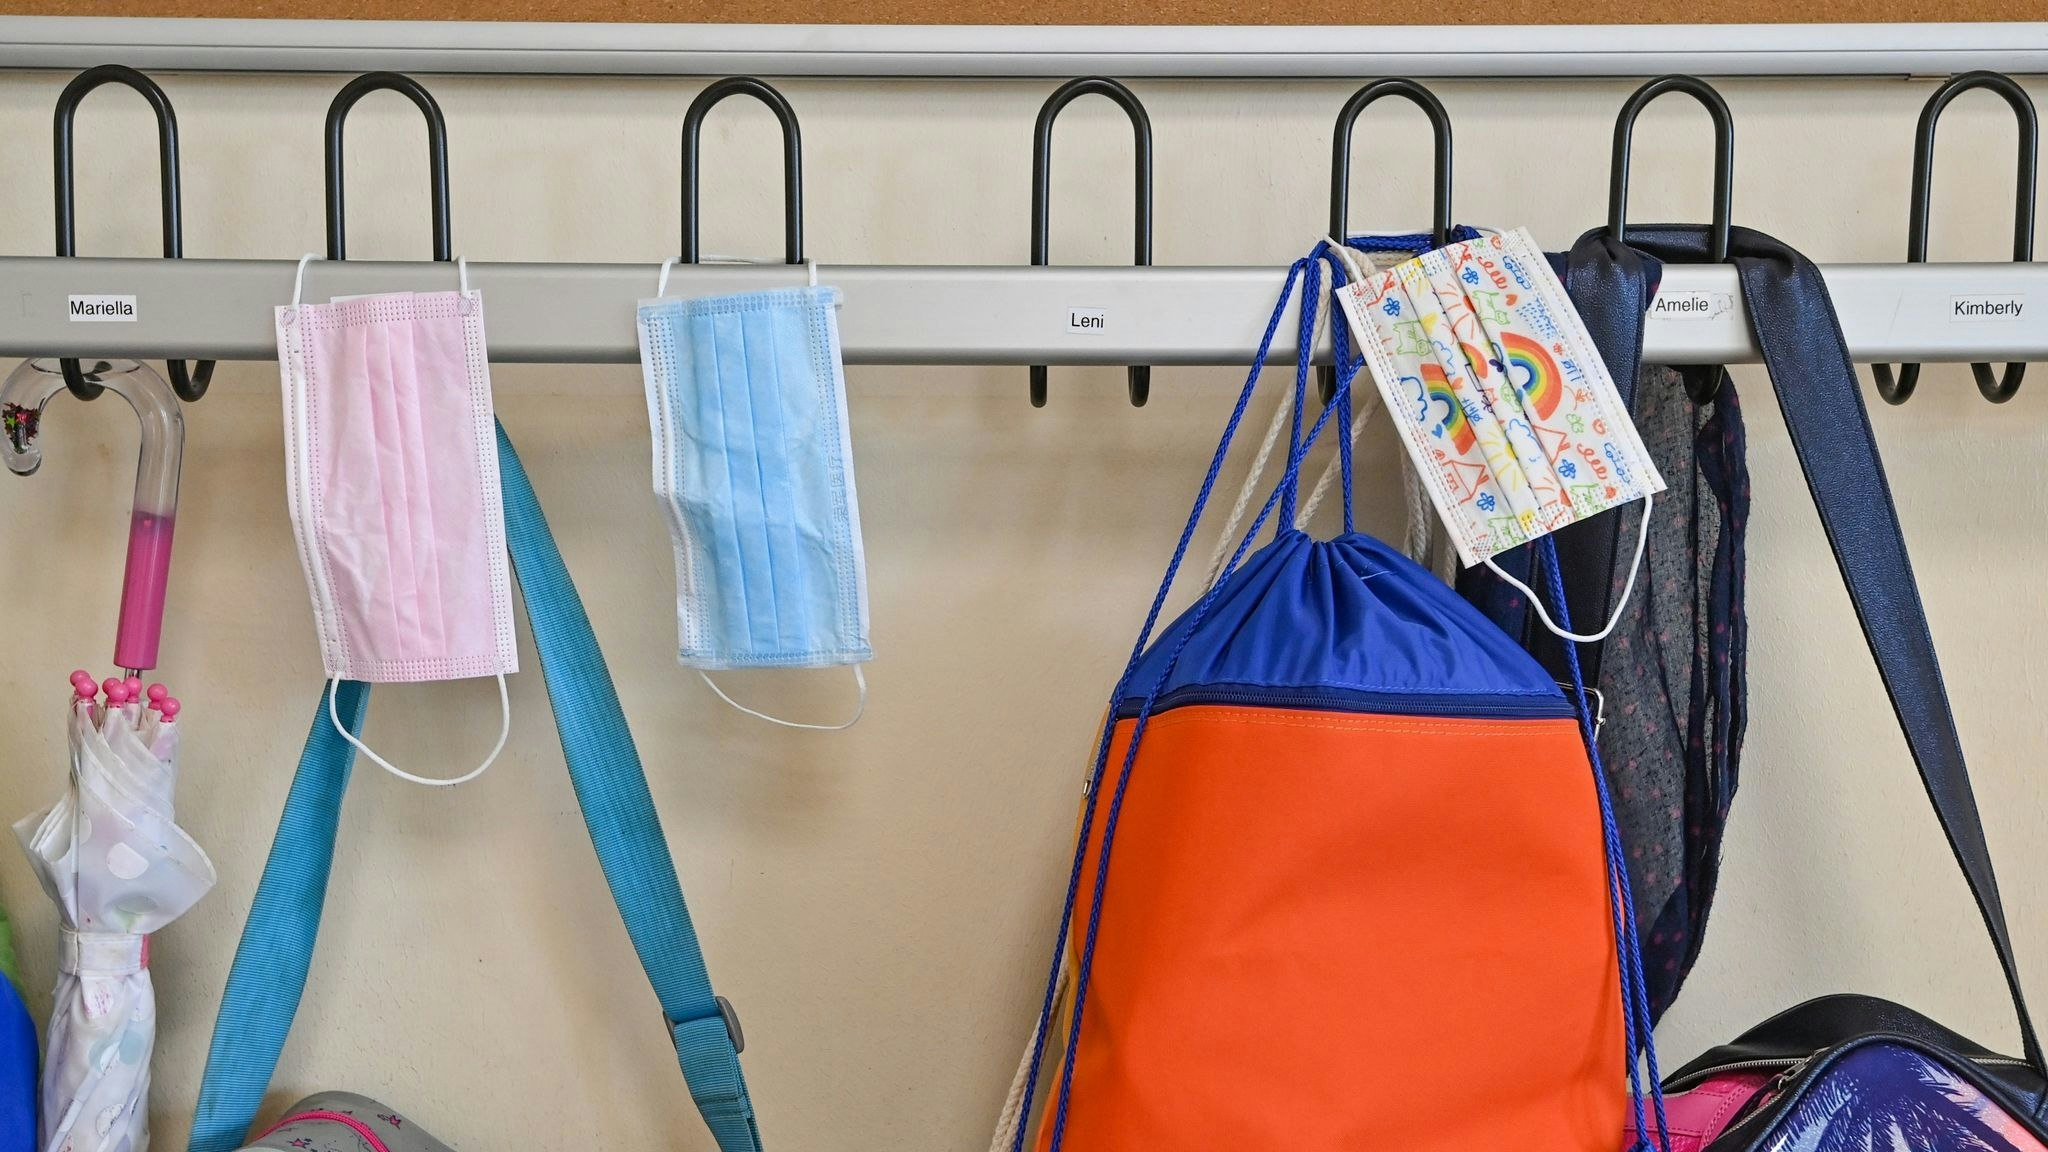 Medizinische Masken und Schultaschen hängen in einer Schulgarderobe. Foto: dpa/Pleul